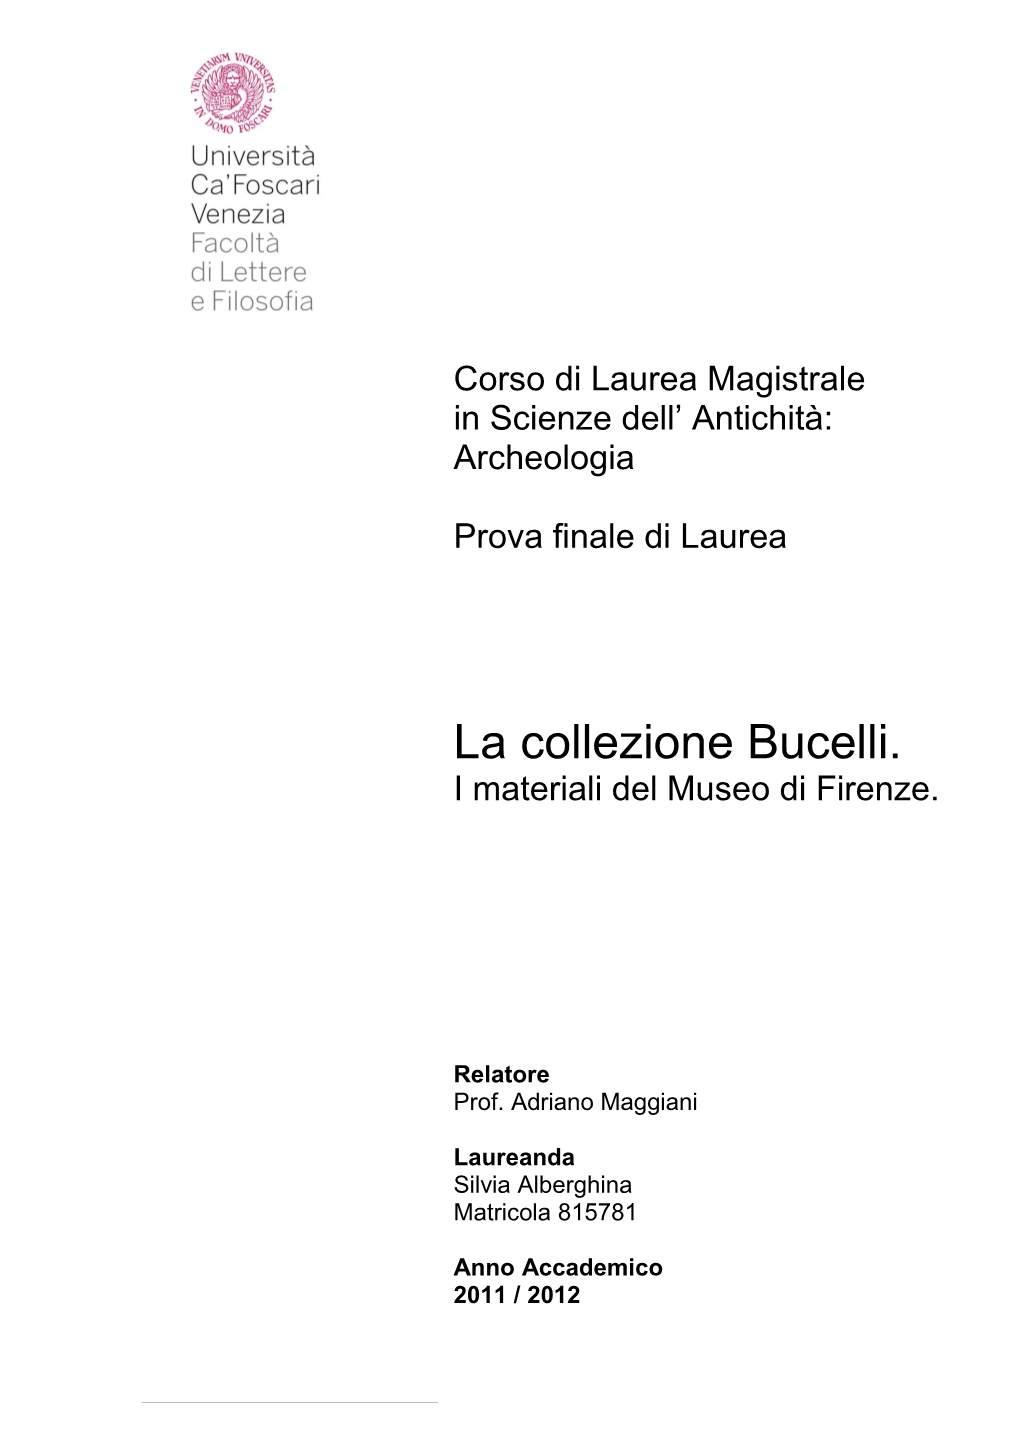 La Collezione Bucelli. I Materiali Del Museo Di Firenze